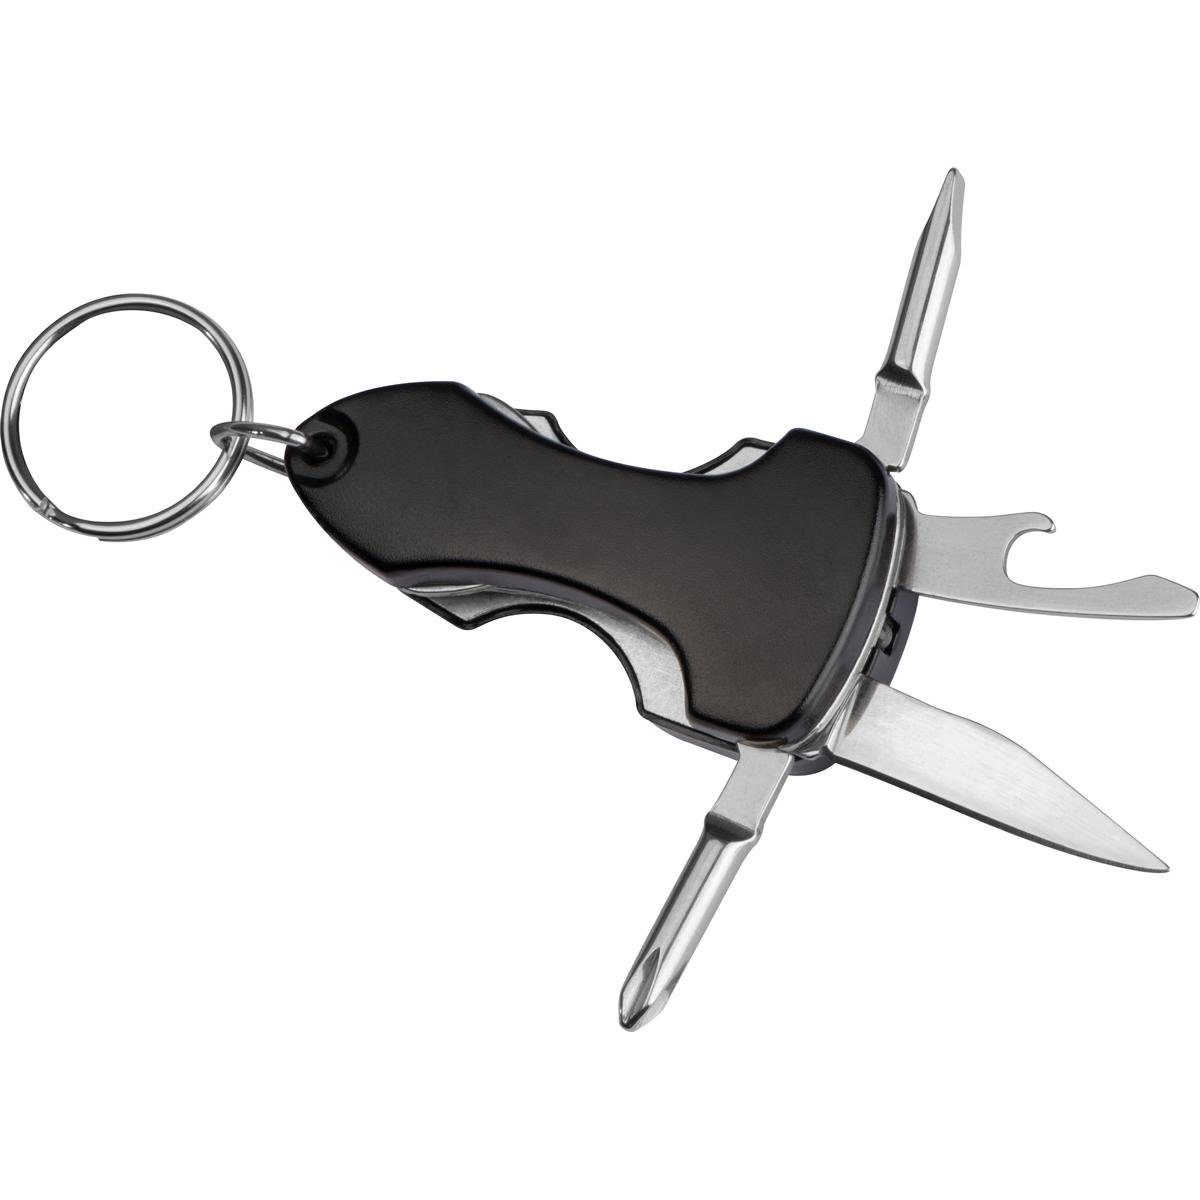 Livepac Office Schlüsselanhänger Multitool / mit LED und Schlüsselanhänger / Taschenmesser / Farbe: sch